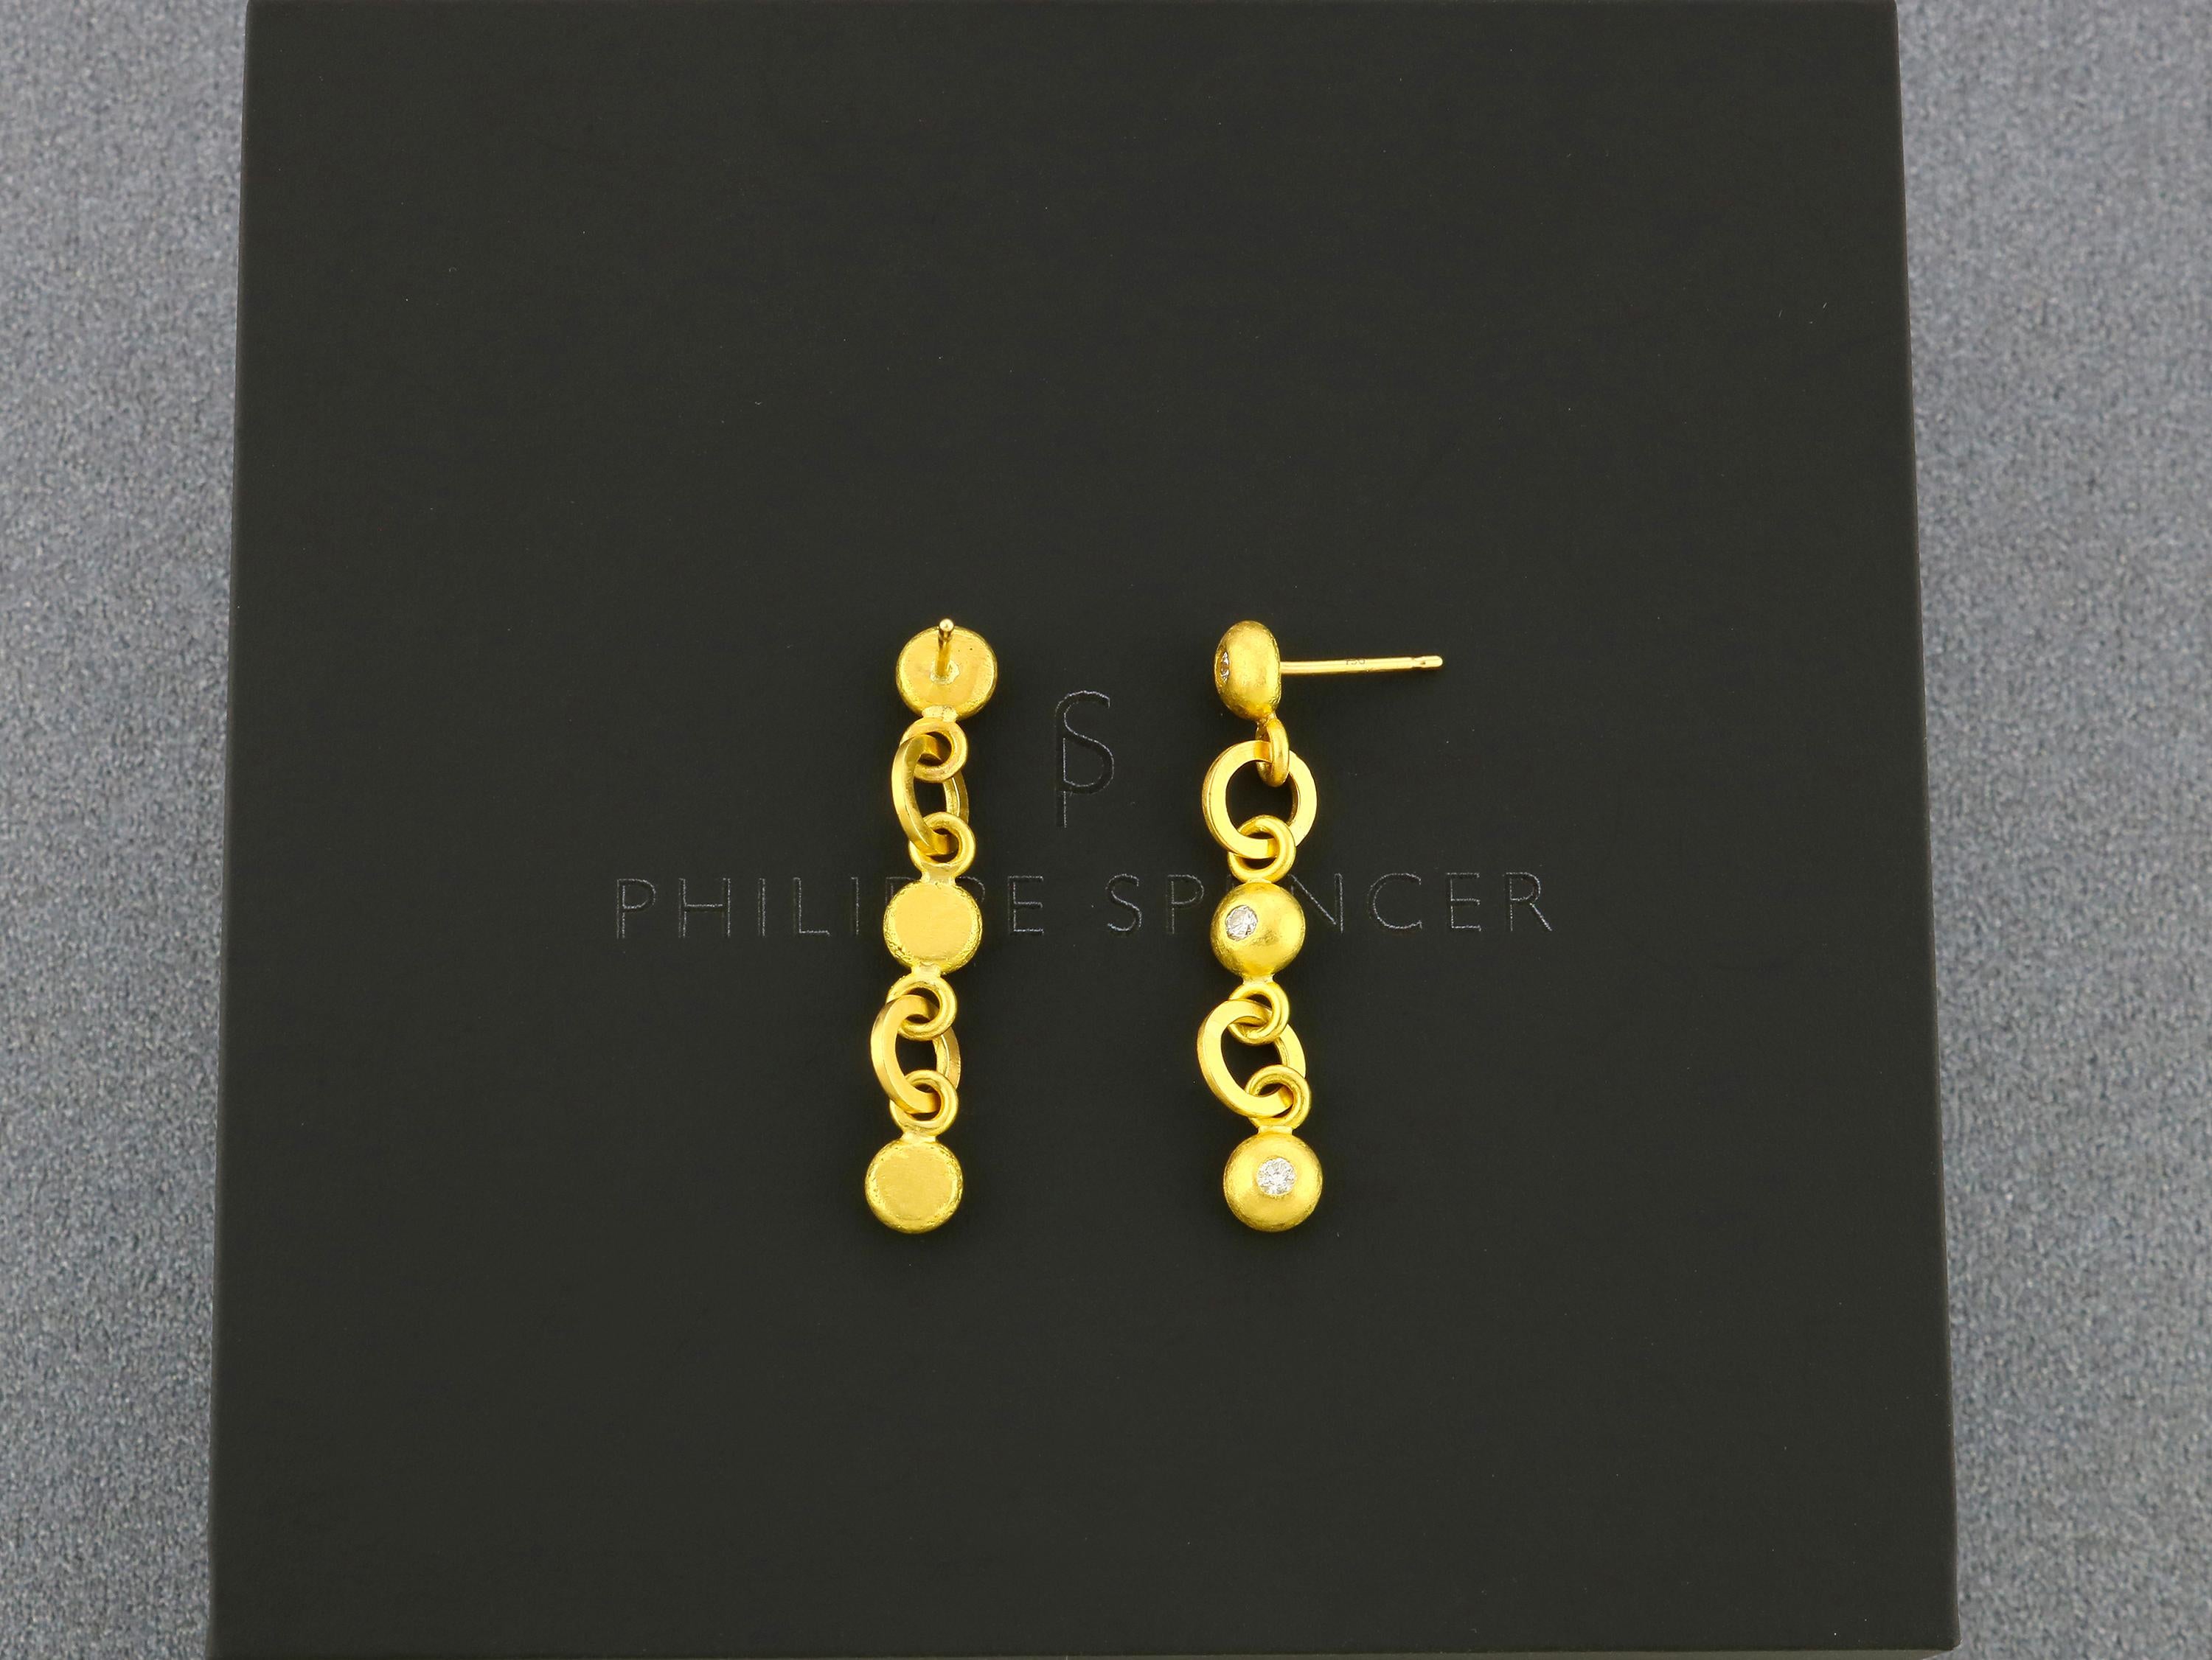 PHILIPPE SPENCER - 1/3 Ct. Total COLORLESS (D-F) Diamond Three Drop Dangling Earrings in Pure 20K Gold, mit Solid 20K Gold Verbindung Links gesetzt. Jedes Paar ist ein einzigartiges, authentisch geschmiedetes Unikat. 

Diese schönen